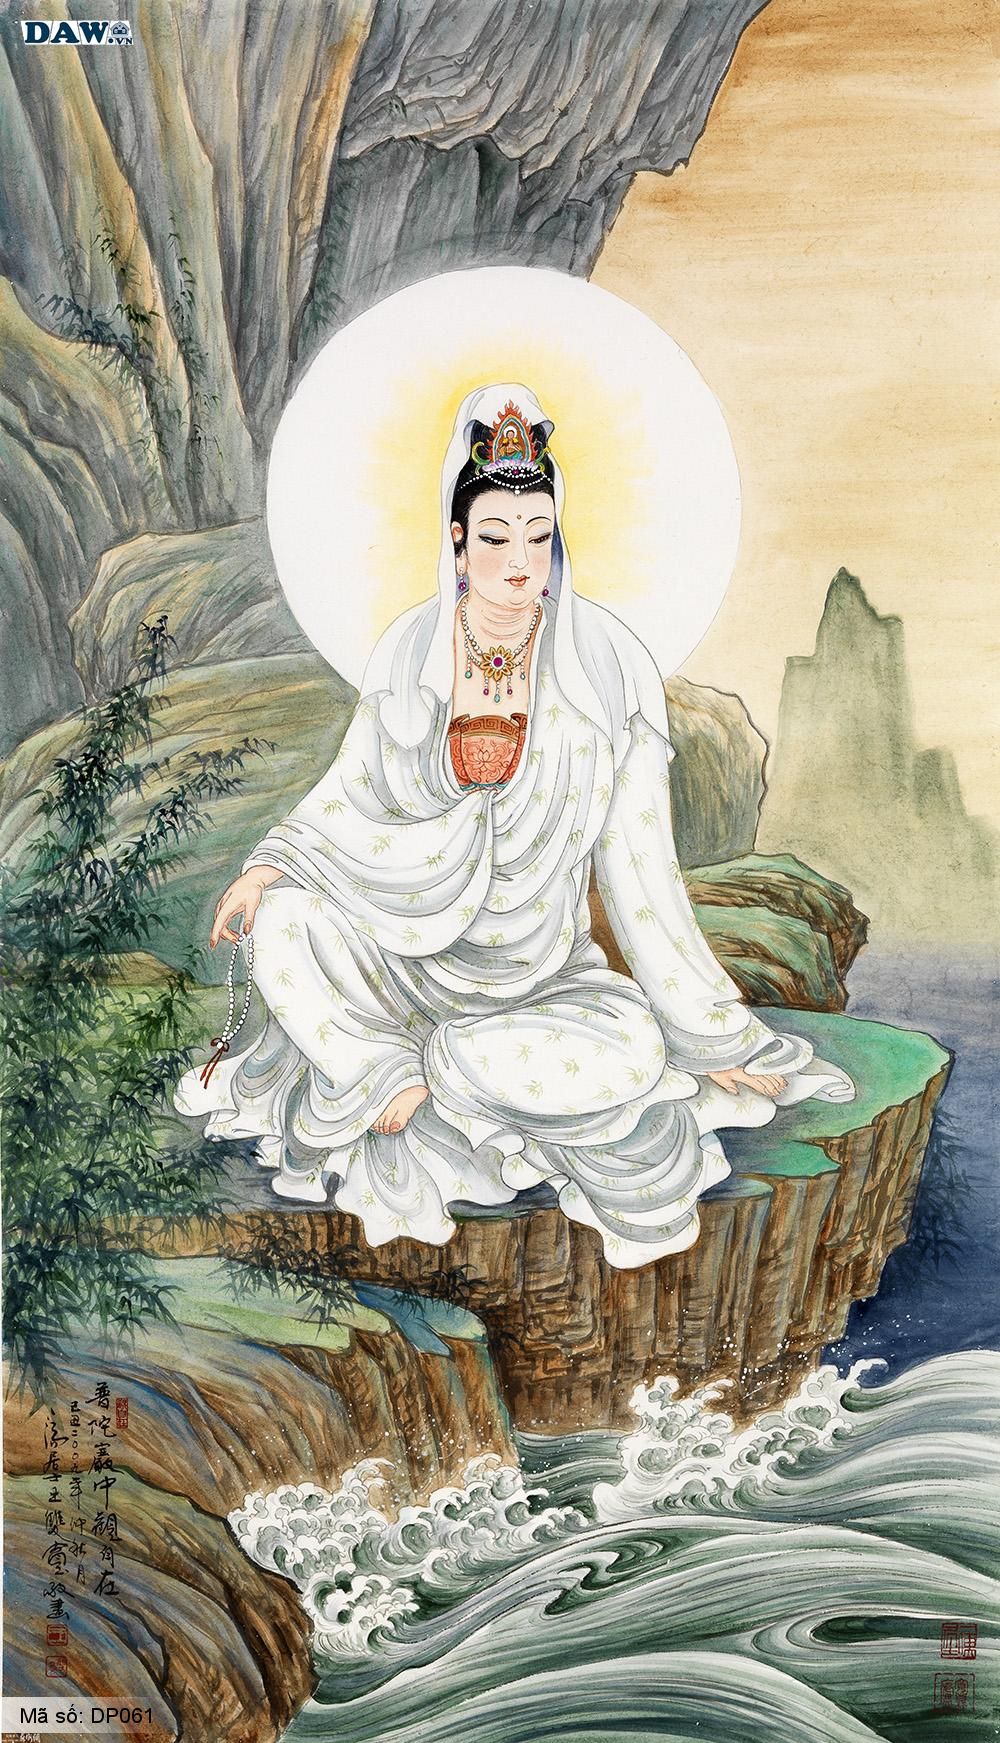 Tranh Dán Tường 3D Hàn Quốc, Hình Ảnh Tượng Phật Bà Quan Âm Ngồi Bên Dòng